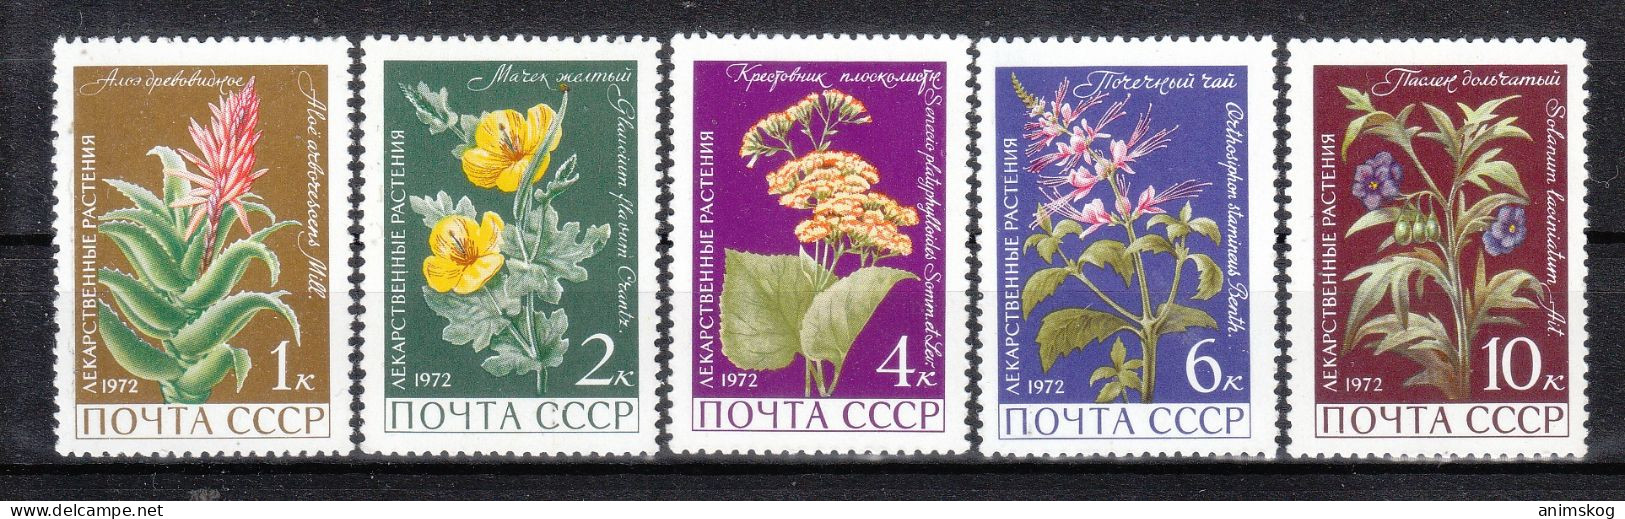 UdSSR 1972**, Arzneipflanzen, Mit Sukkulenten Aloe Und Senecio / USSR 1972, MNH, Medicinal Plants With Aloe And Senecio - Cactusses